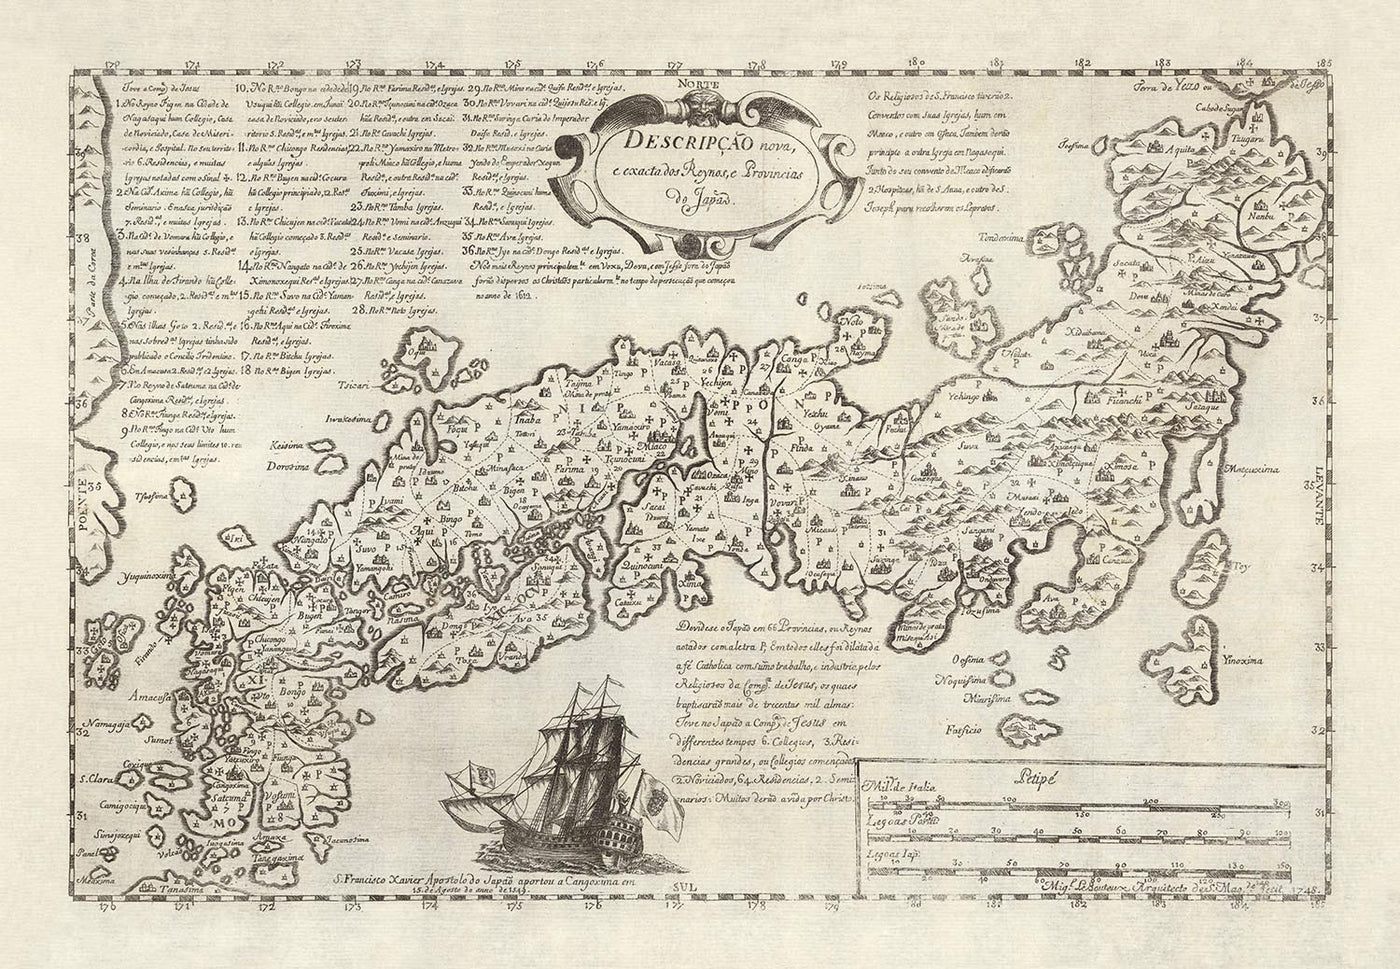 Ancienne carte portugaise du Japon par Moreira, 1679 : Edo, Kyoto, Osaka, détails de navigation, époque Shogun